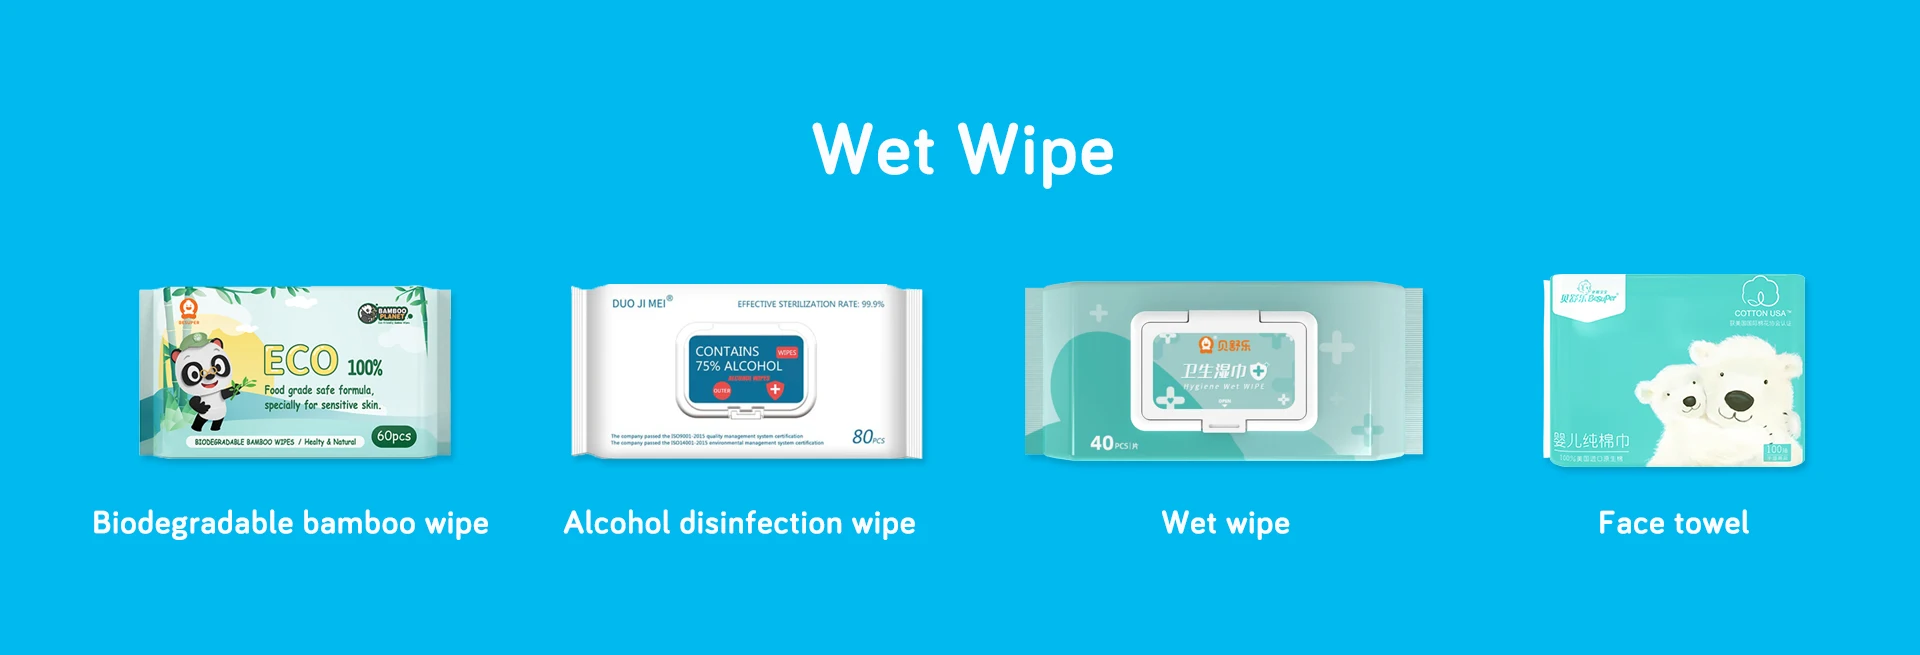 wet wipe.jpg